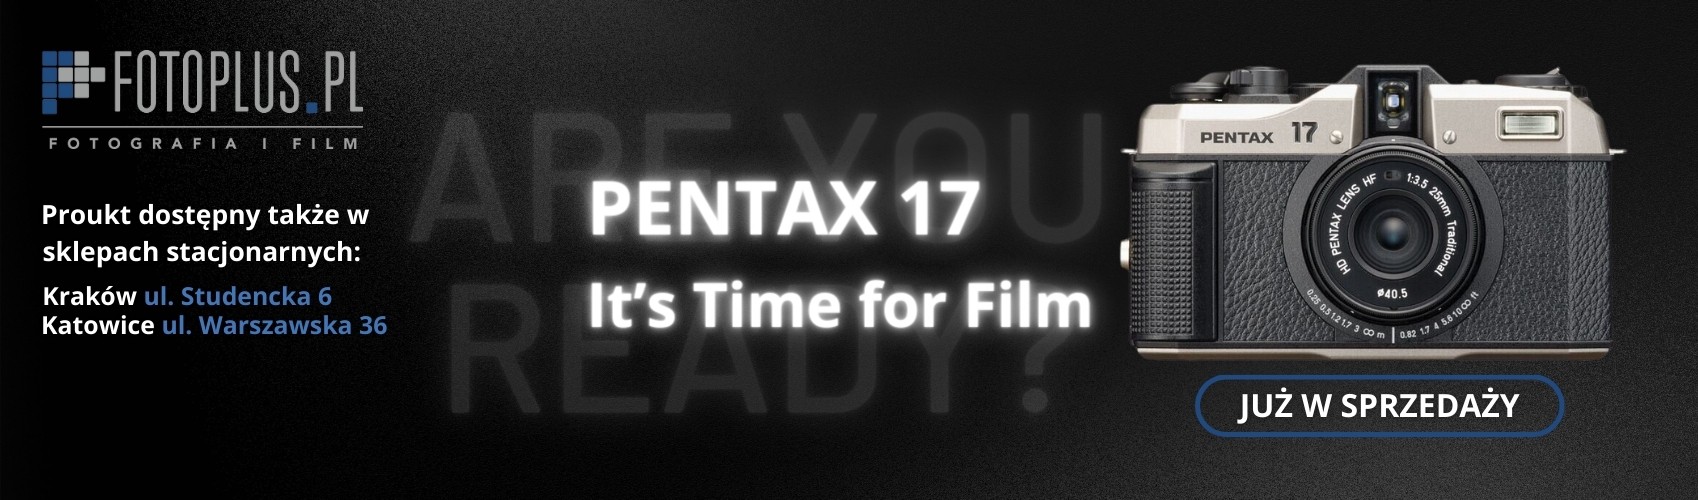 Pentax 17 Analogowa nowość